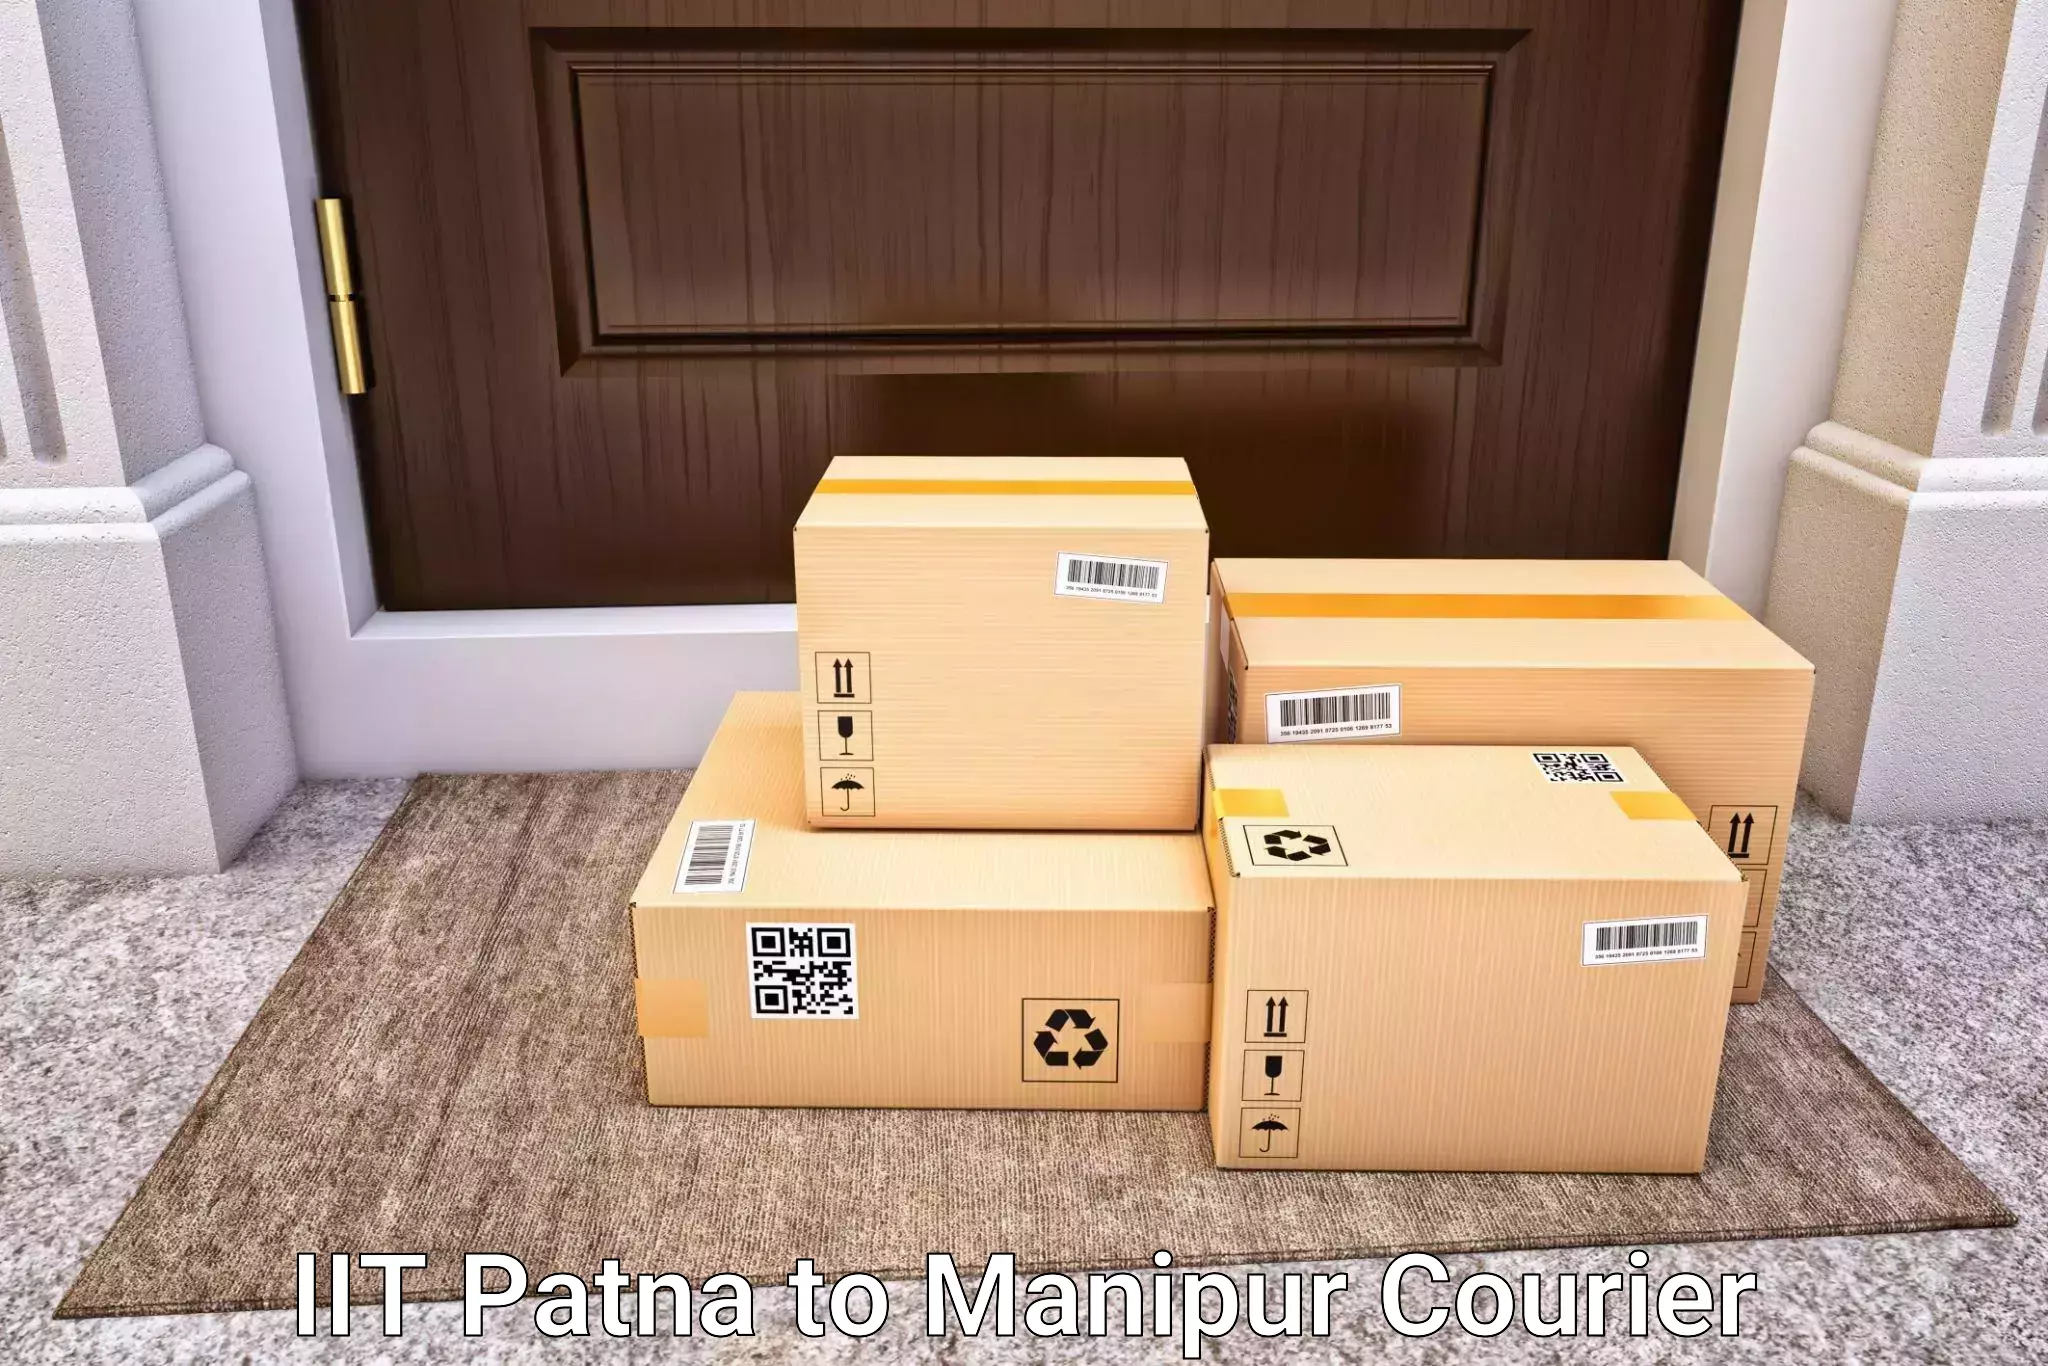 Luggage shipment tracking IIT Patna to Ukhrul